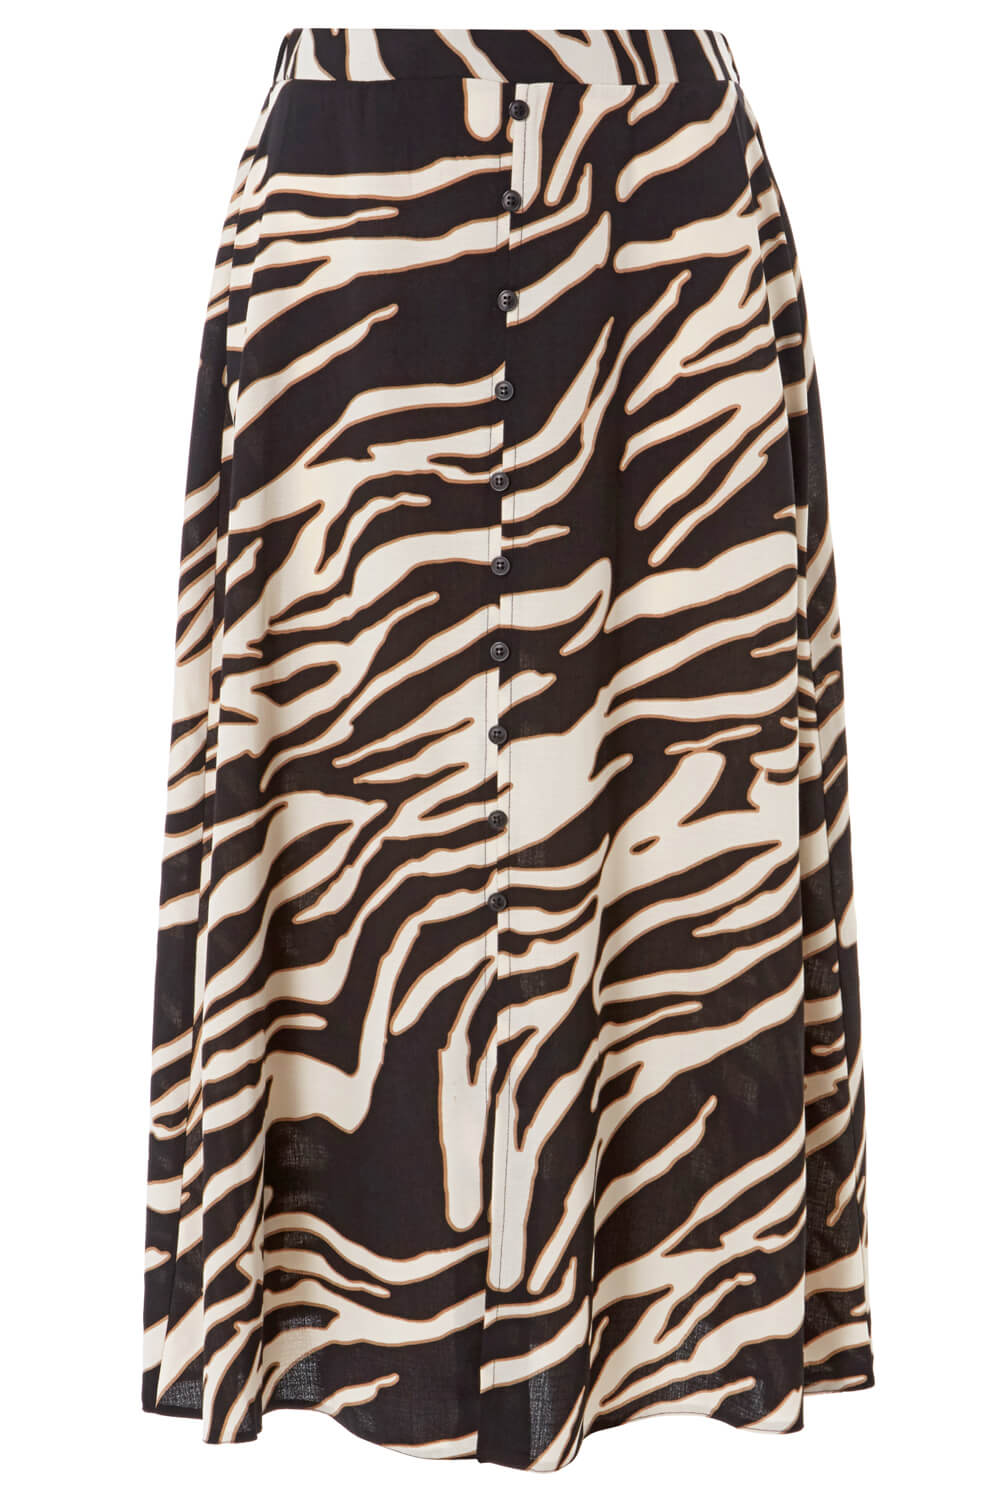 Ivory  Zebra Print Skirt, Image 4 of 4